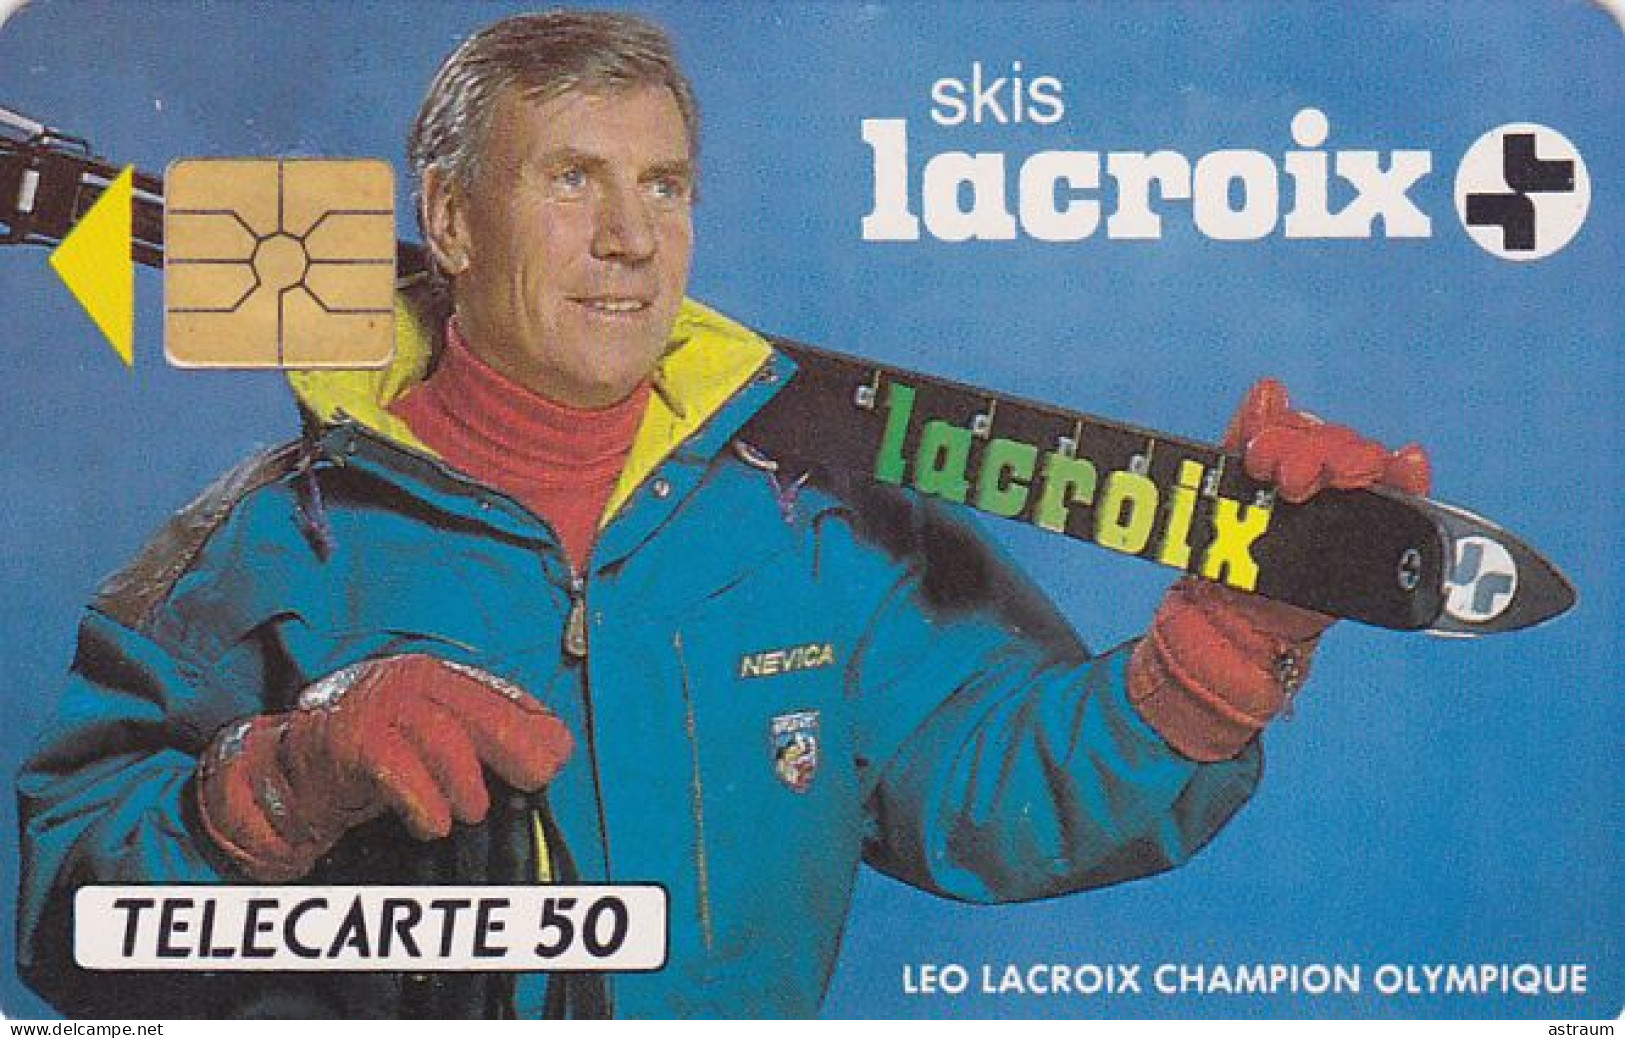 Telecarte Privée D576  NEUVE-- Skis Lacroix - Gem - 2500 Ex - 50 Un - 1991 - Privat